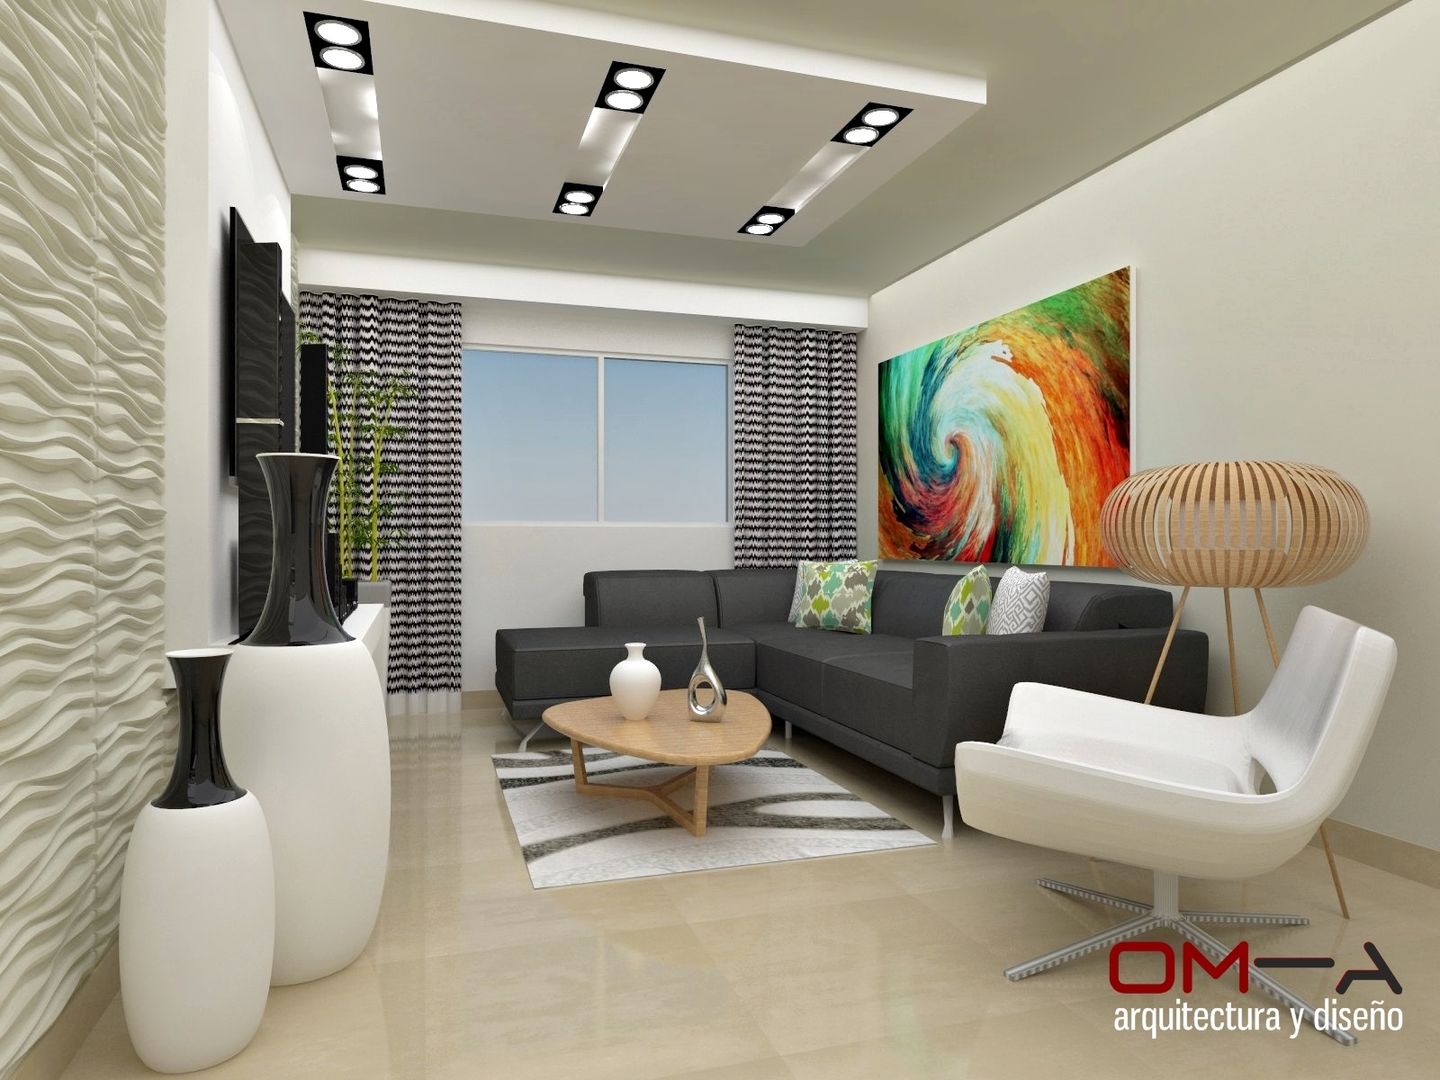 Diseño interior en apartamento , om-a arquitectura y diseño om-a arquitectura y diseño غرفة المعيشة